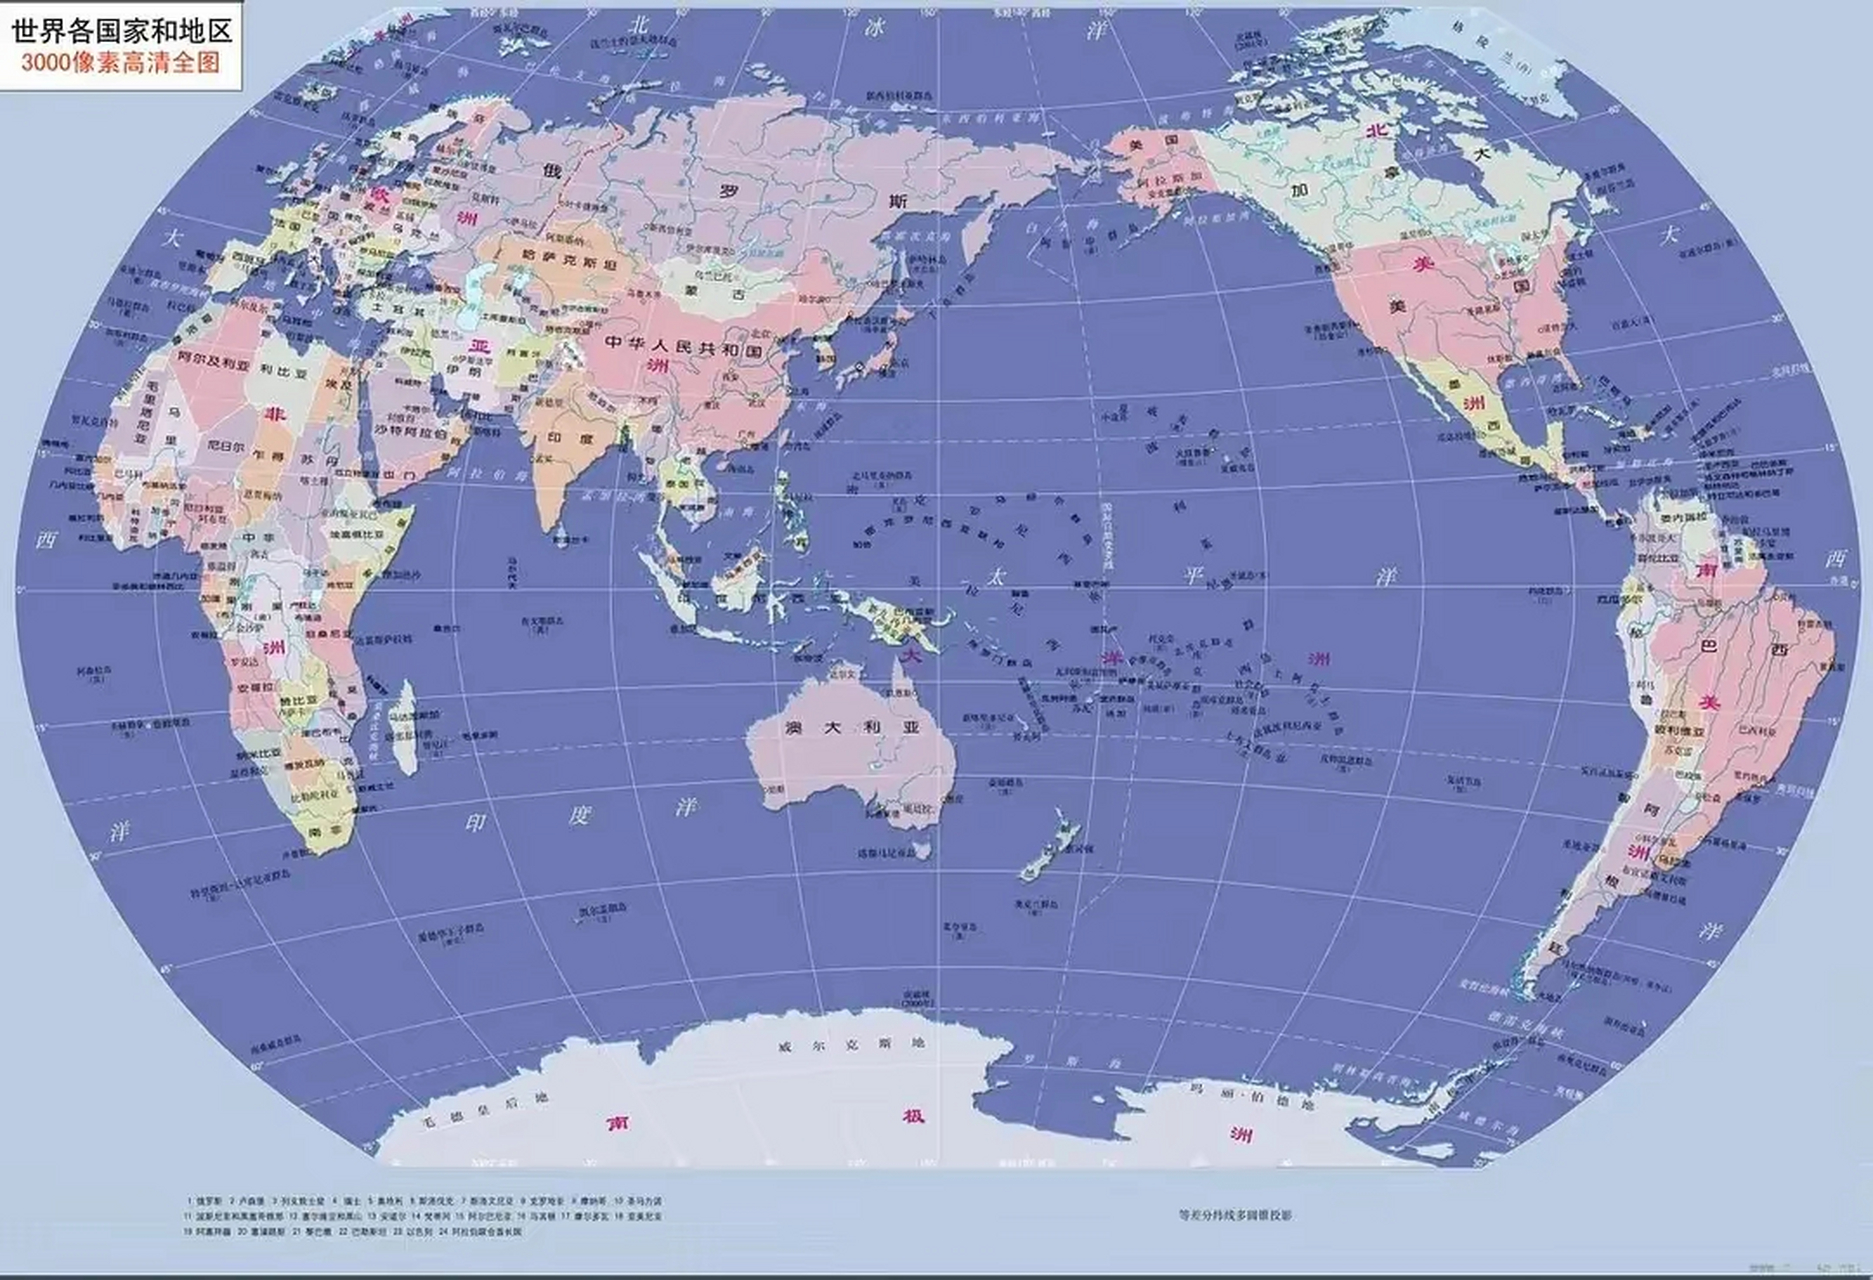 世界各洲各国分布图 【欧洲】:44个(面积1016万km) 1